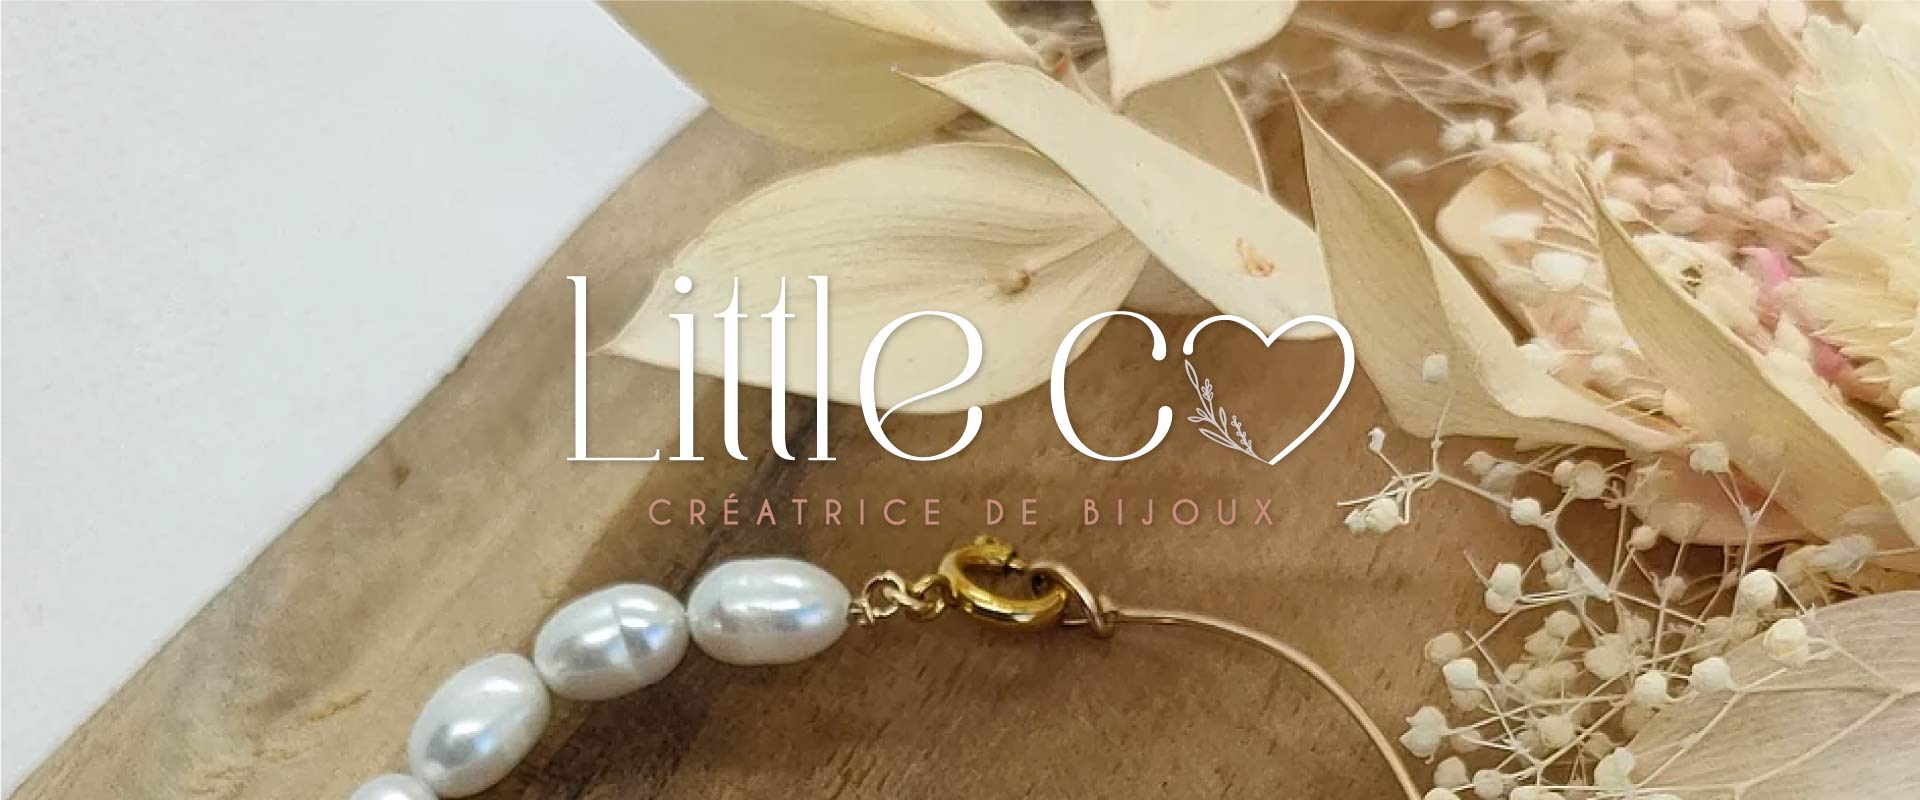 Little co creation site internet e commerce saint gilles croix de vie owmel agence